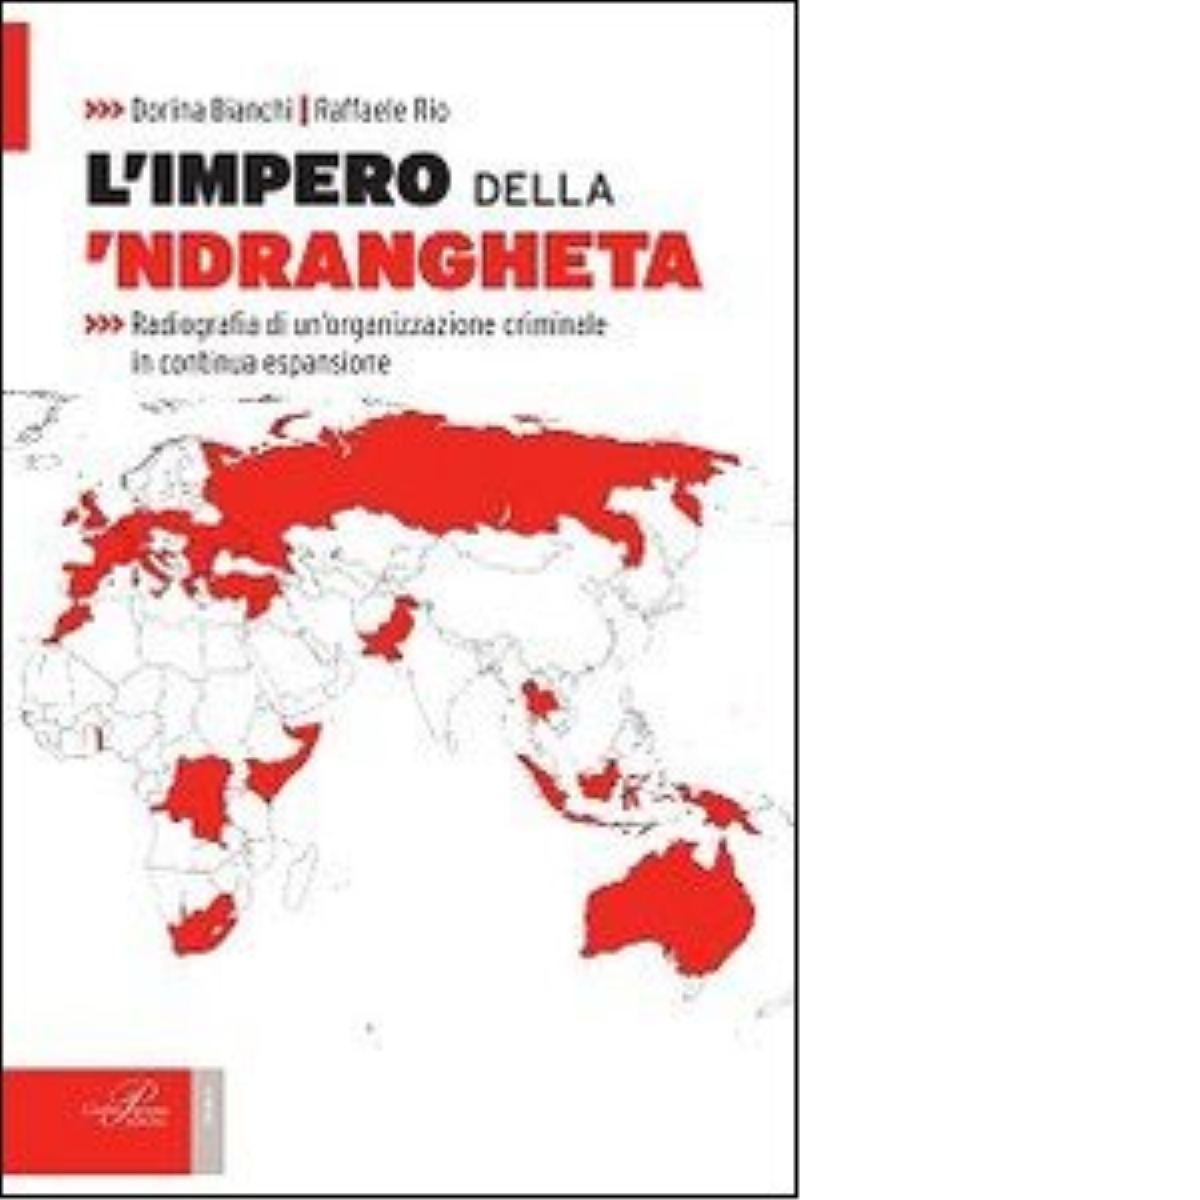 L' impero della 'ndrangheta - Dorina Bianchi, Raffaele Rio - Perrone, 2014